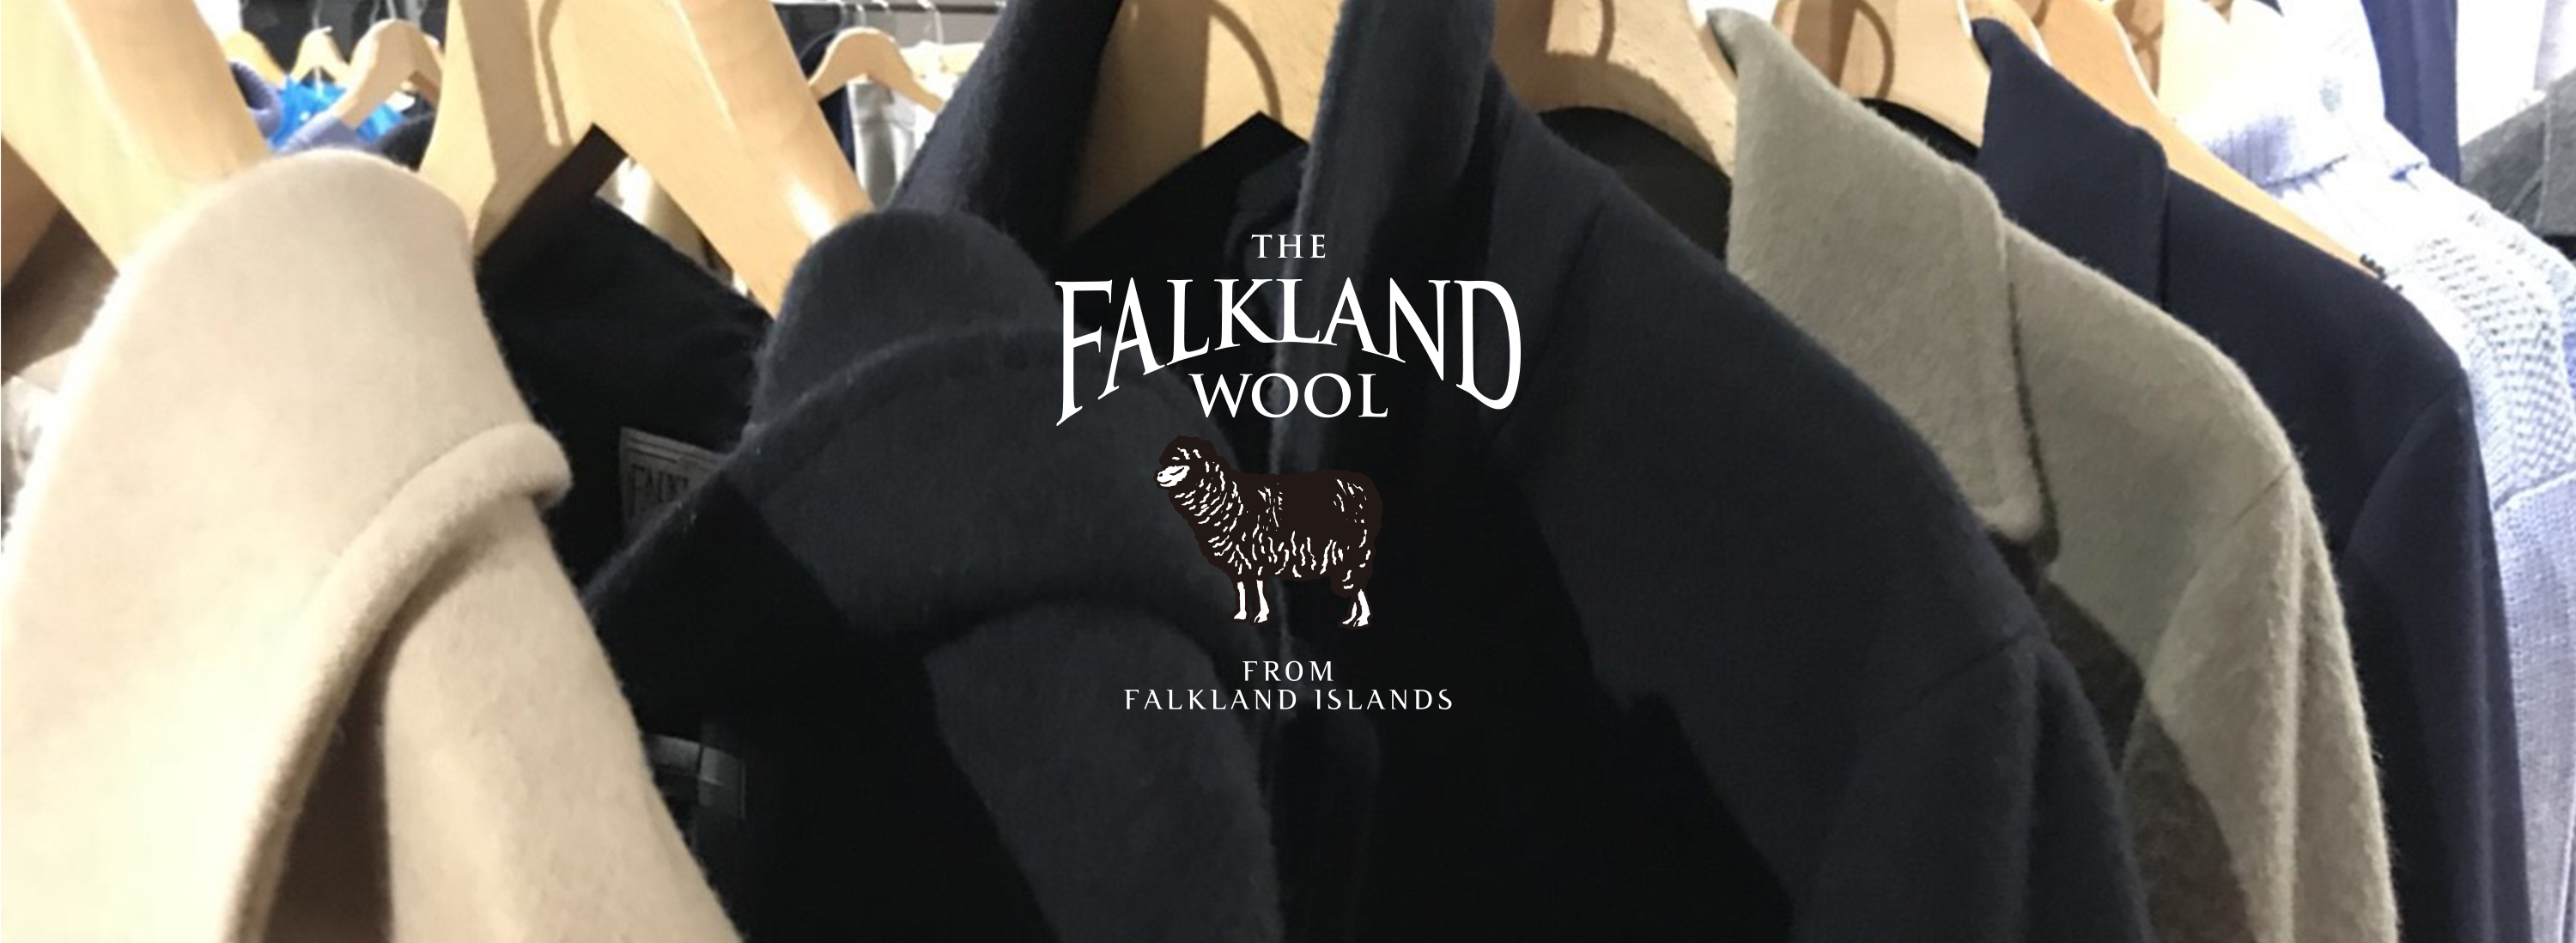 THE FALKLAND WOOL -フォークランド ウール